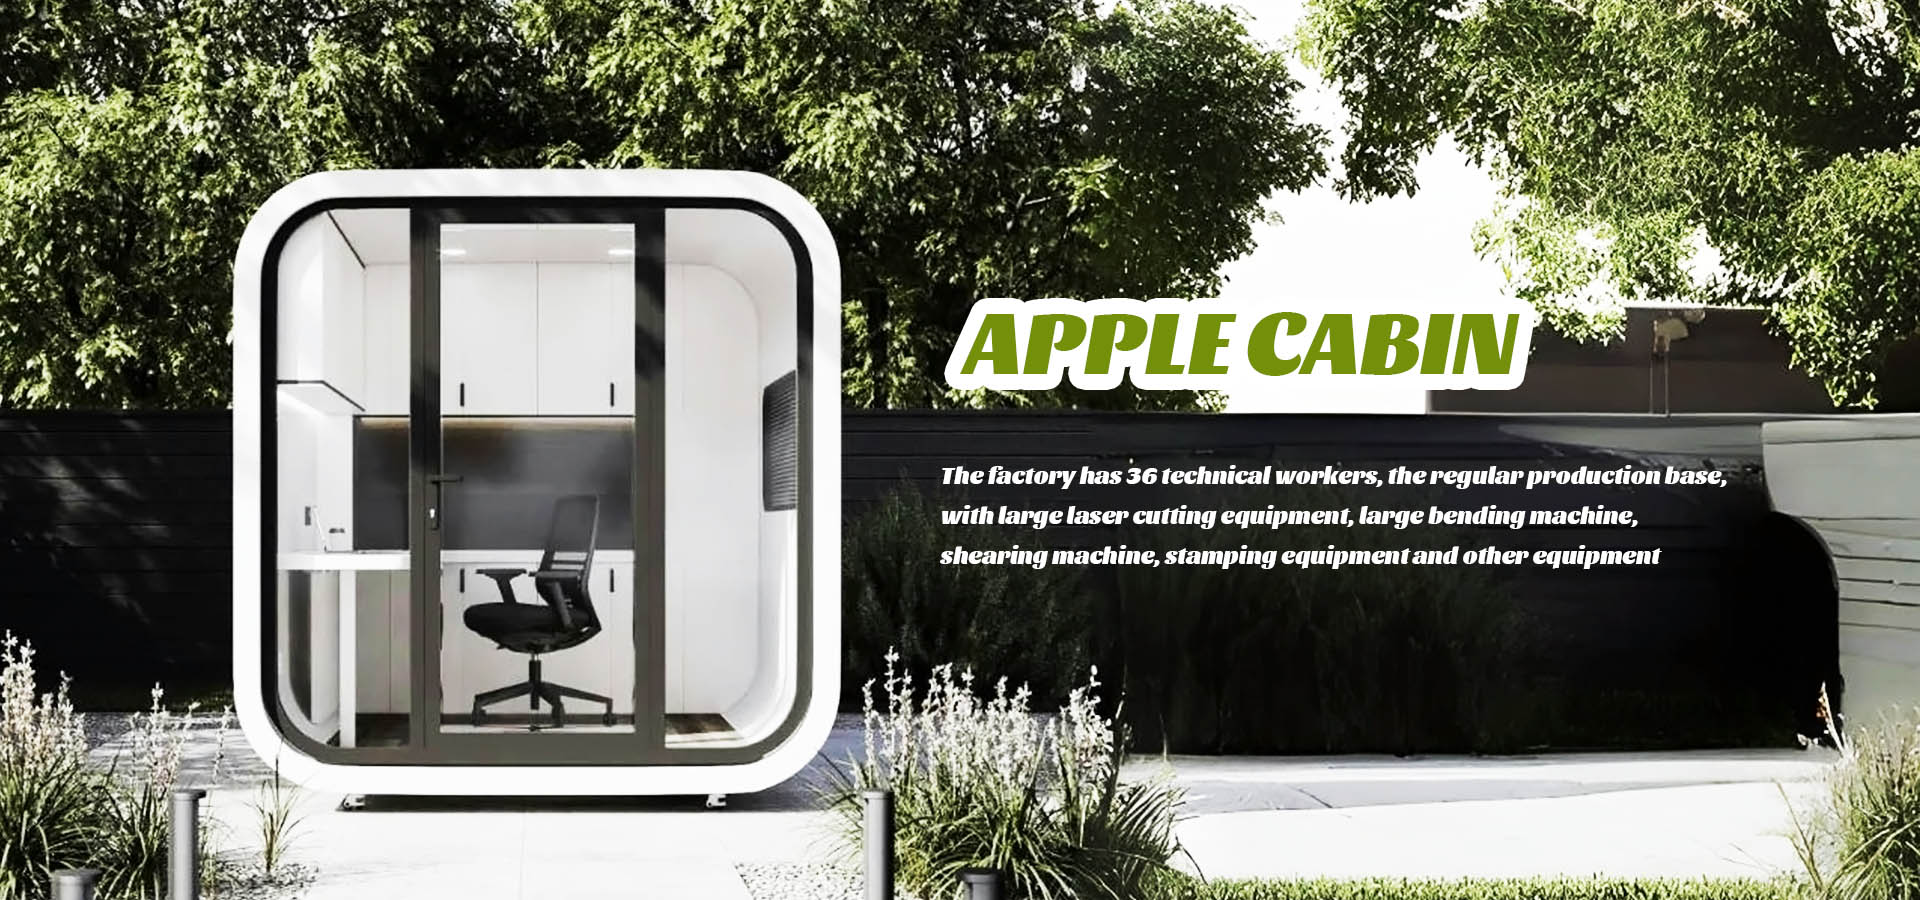 Apple Cabin Manufacturer